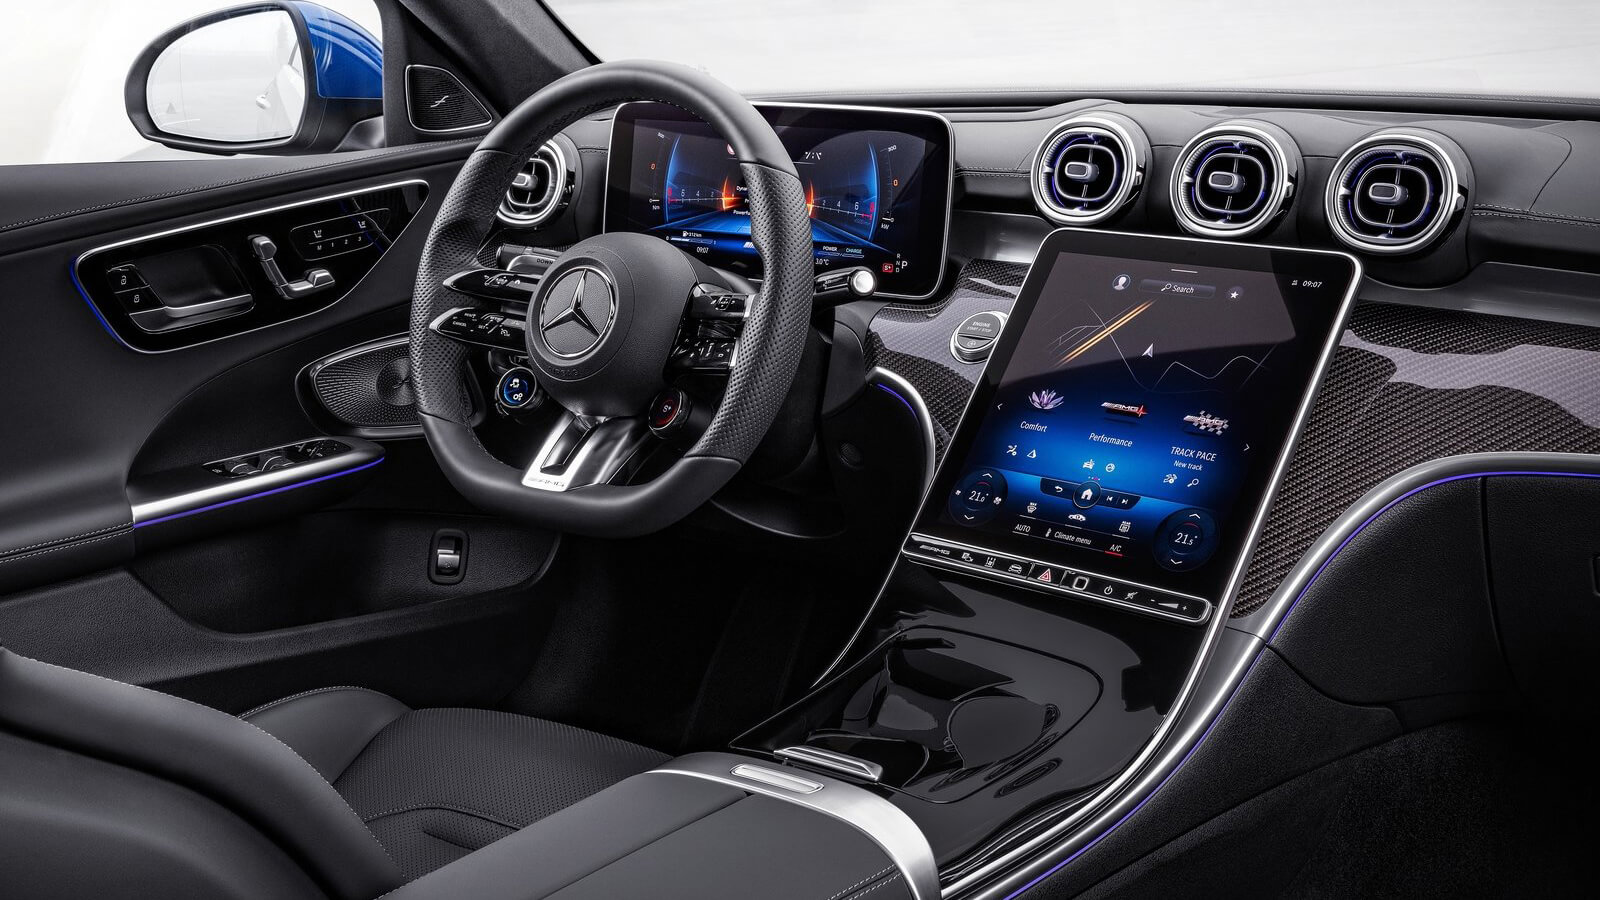  Mercedes  AMG C43 Premium Plus Estate